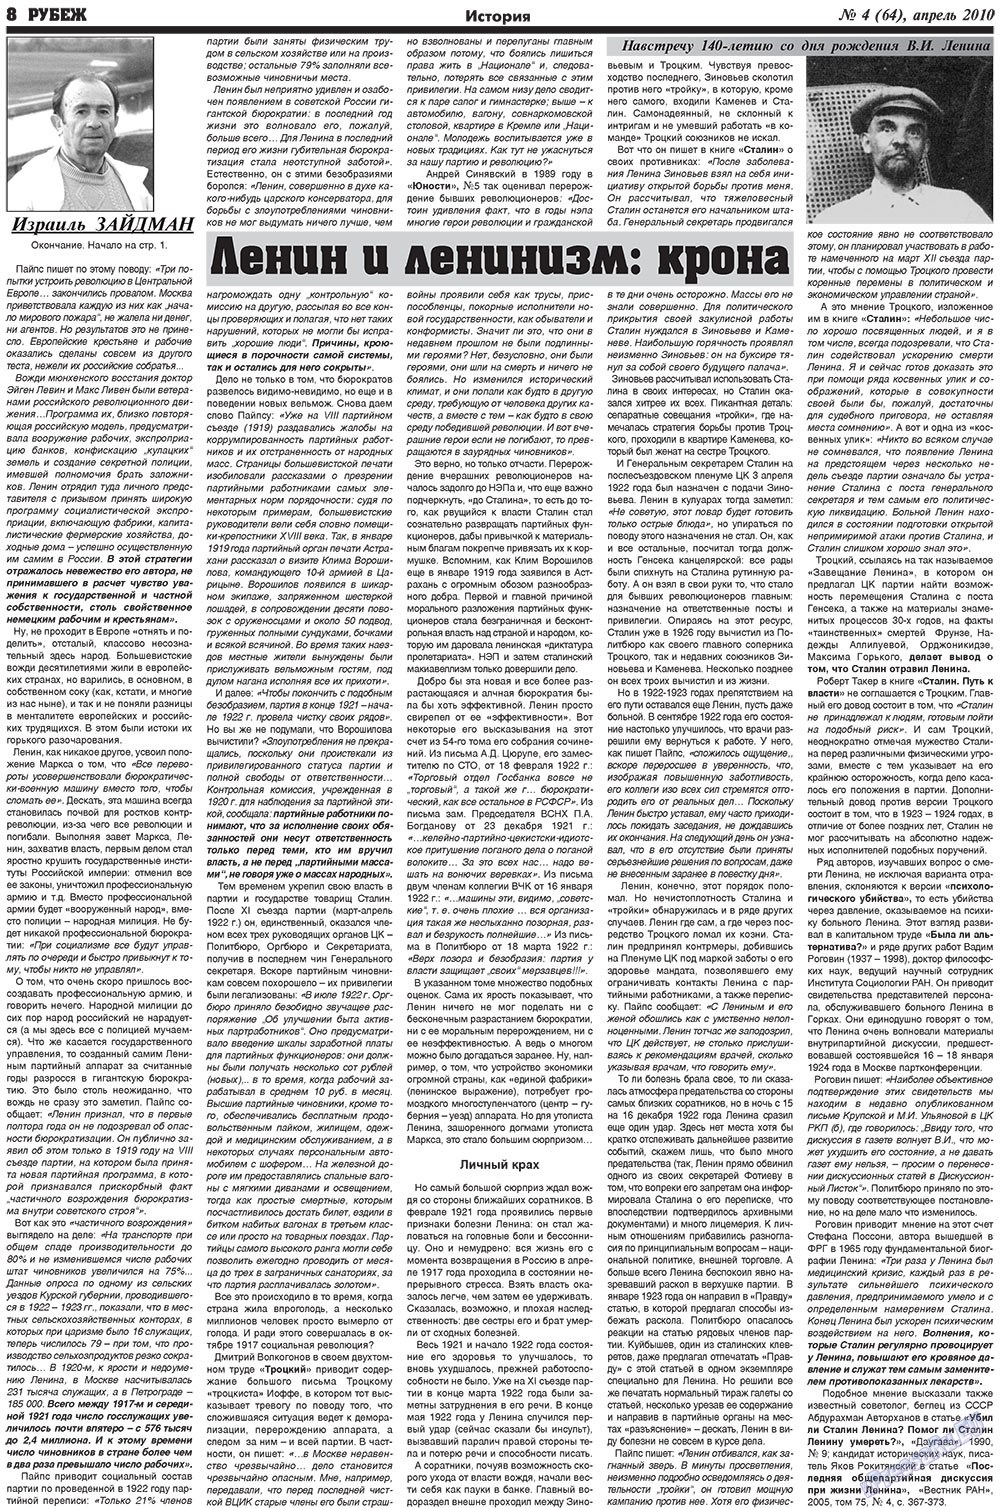 Рубеж (газета). 2010 год, номер 4, стр. 8